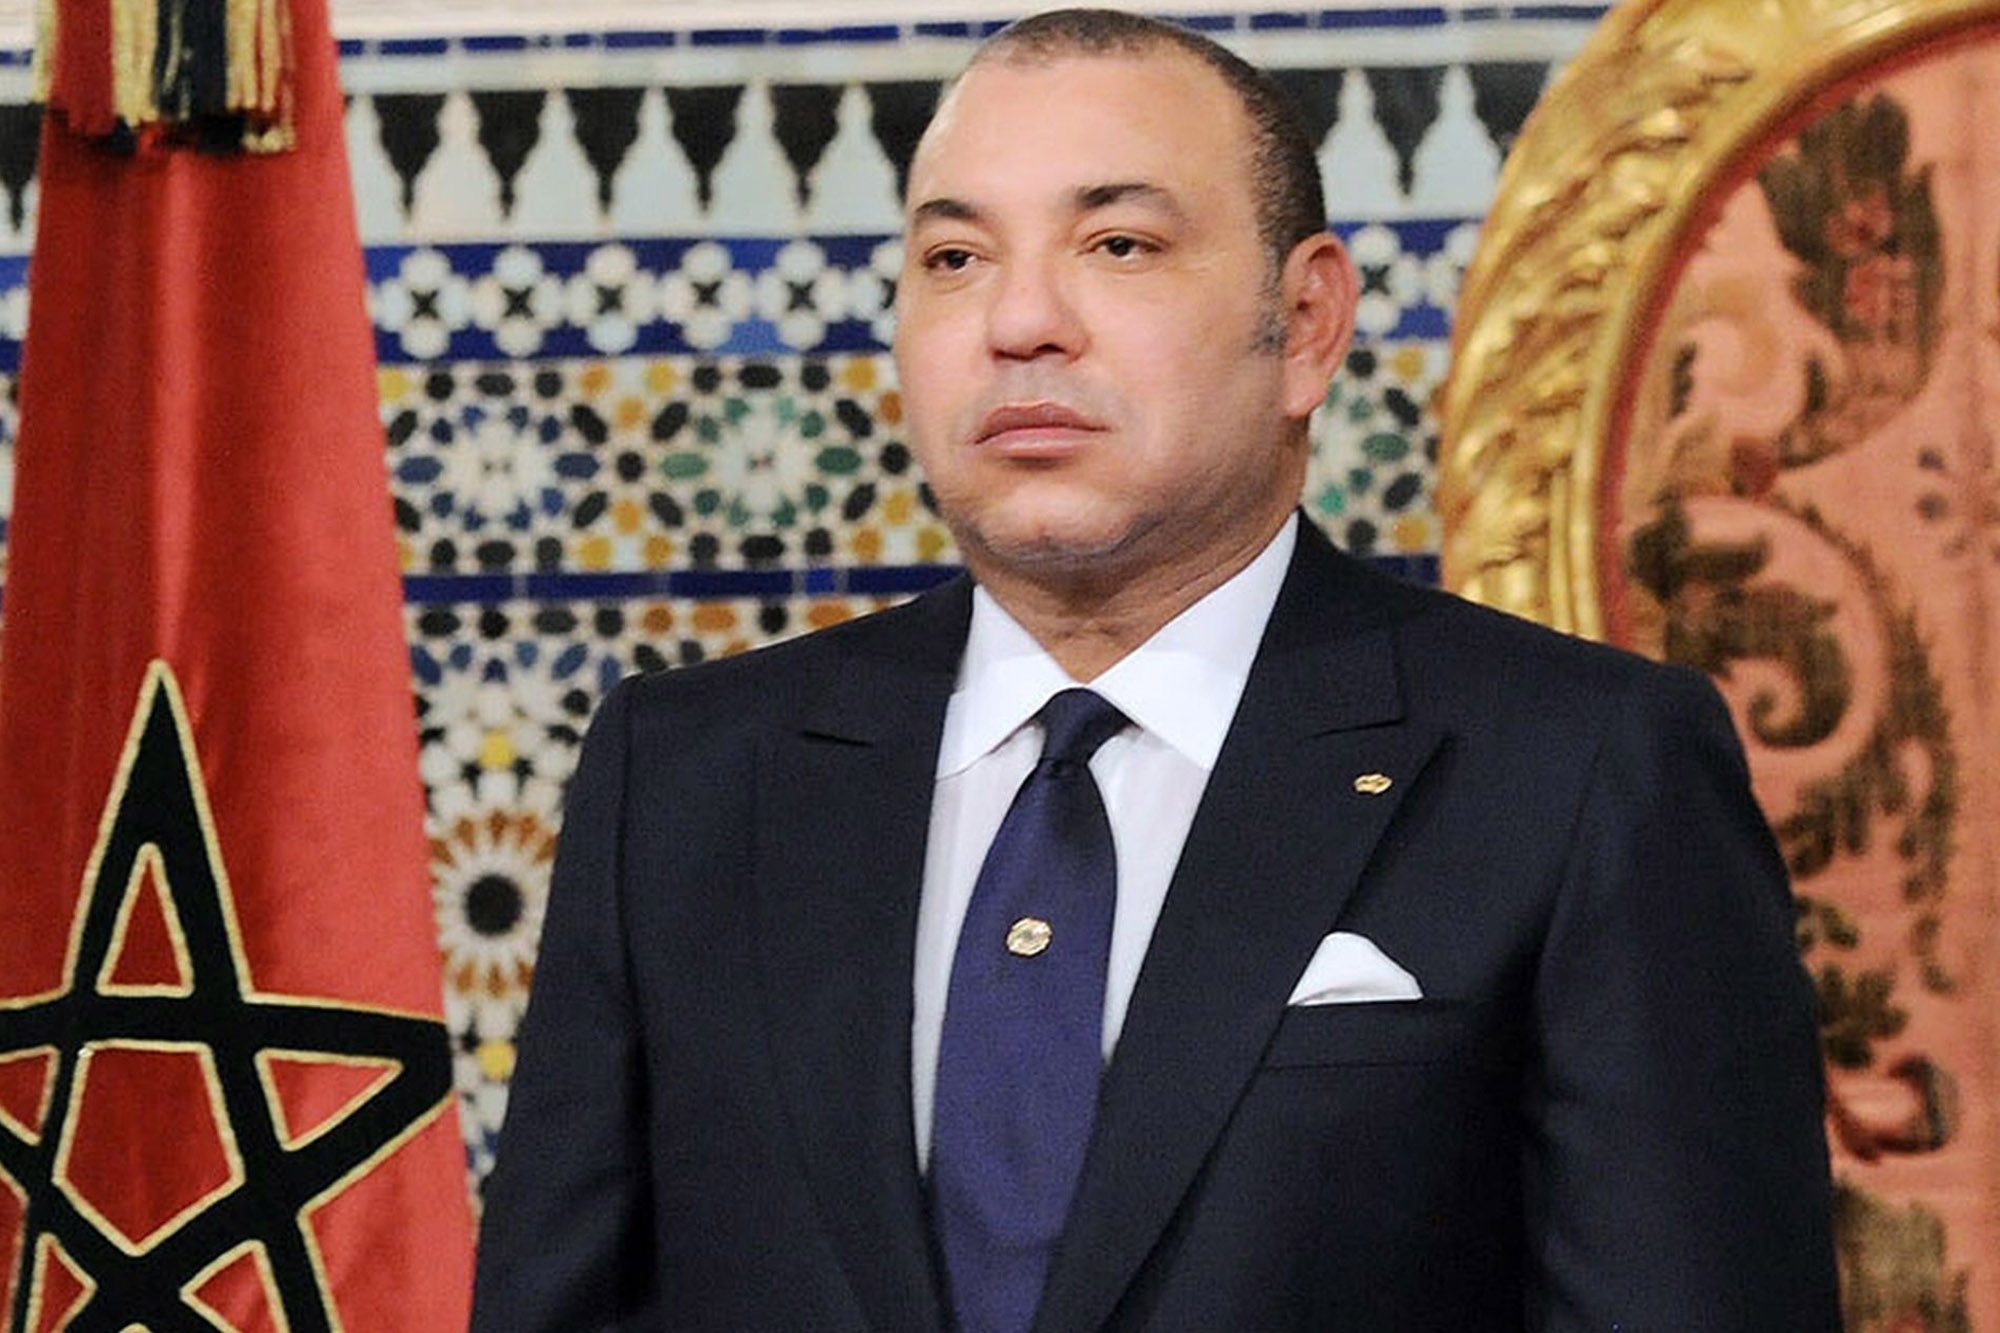 Mohammed VI, King of Morocco